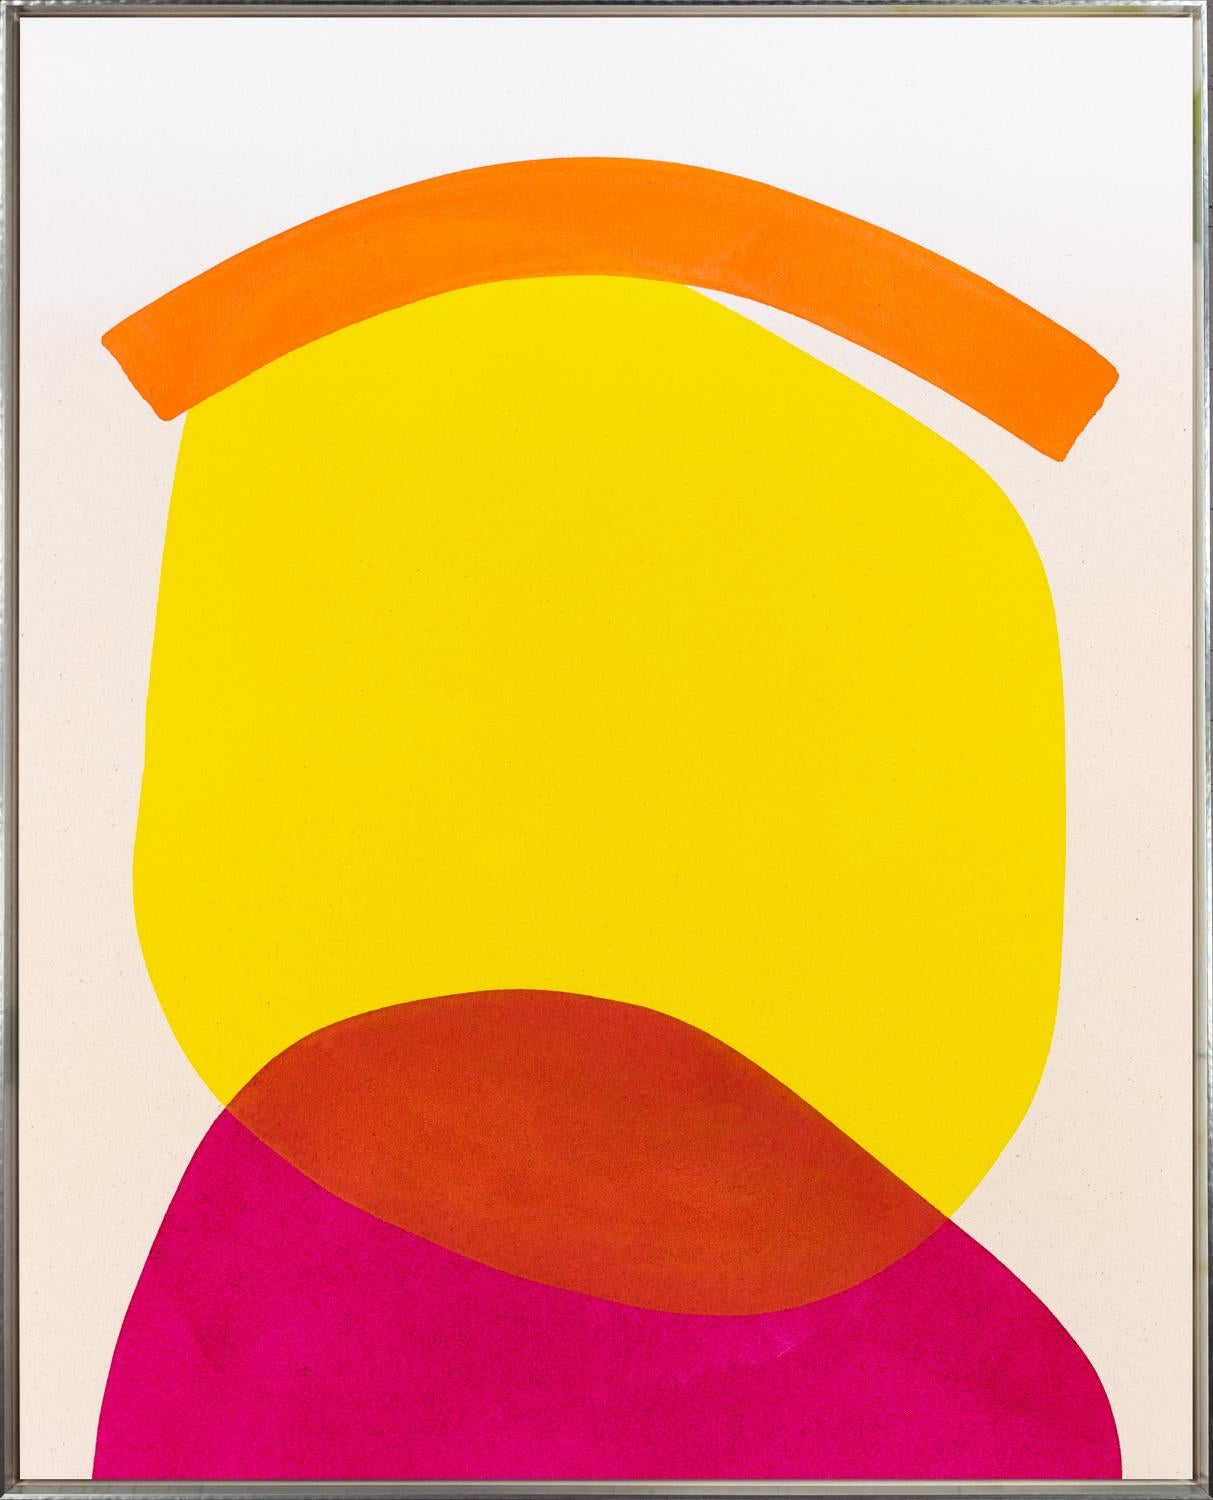 "Maison silencieuse au toit jaune, magenta et orange" Peinture contemporaine - Painting de Aron Hill